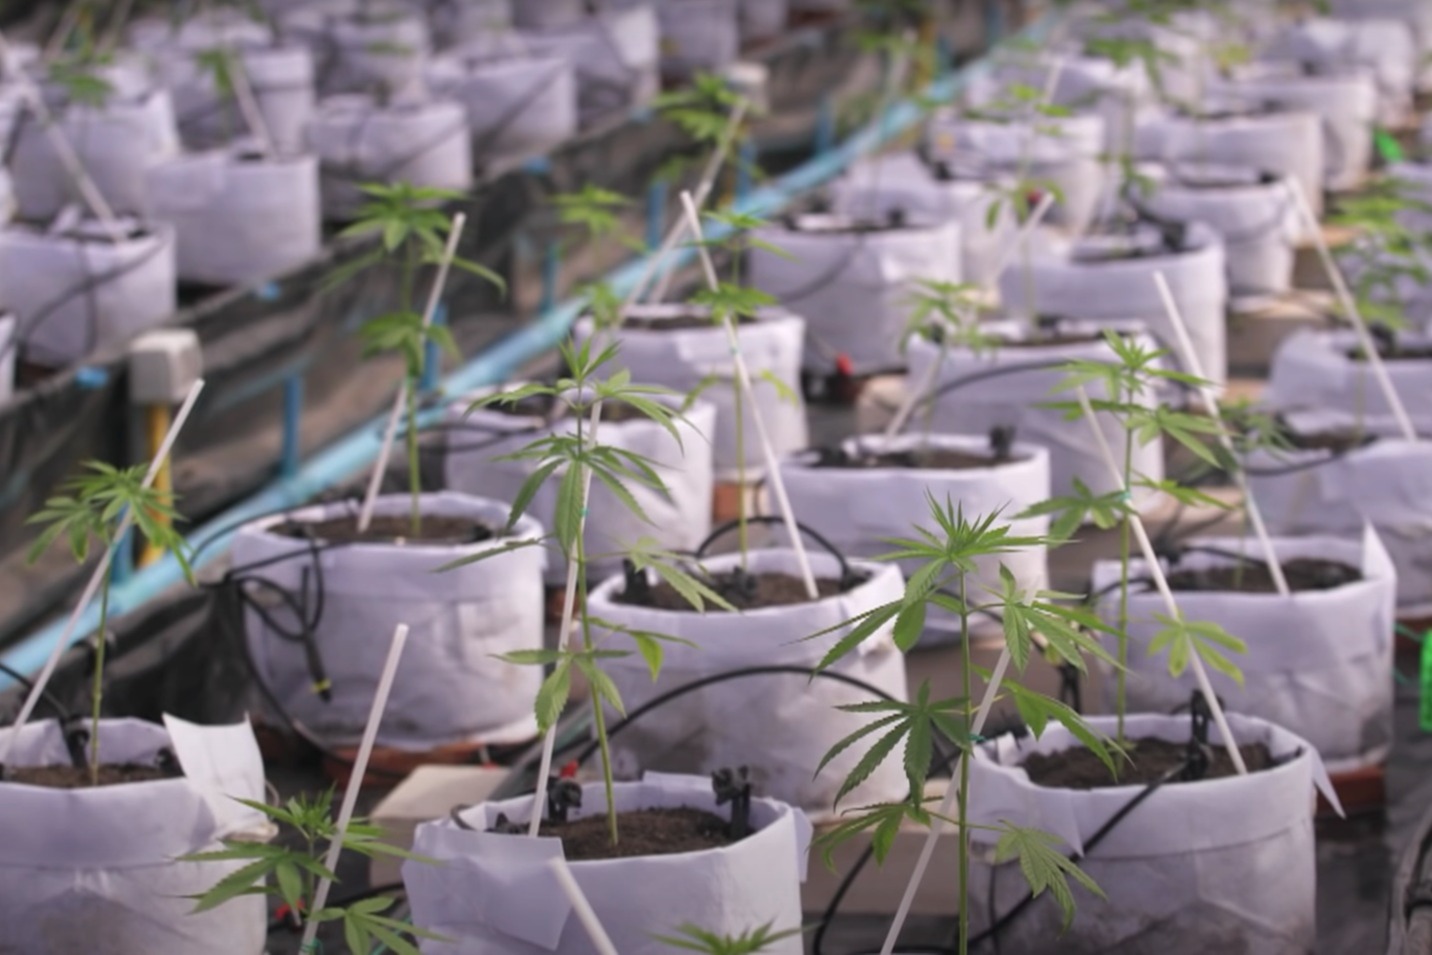 泰國發展大麻產業鼓勵種植  免費派100萬株給全國家庭